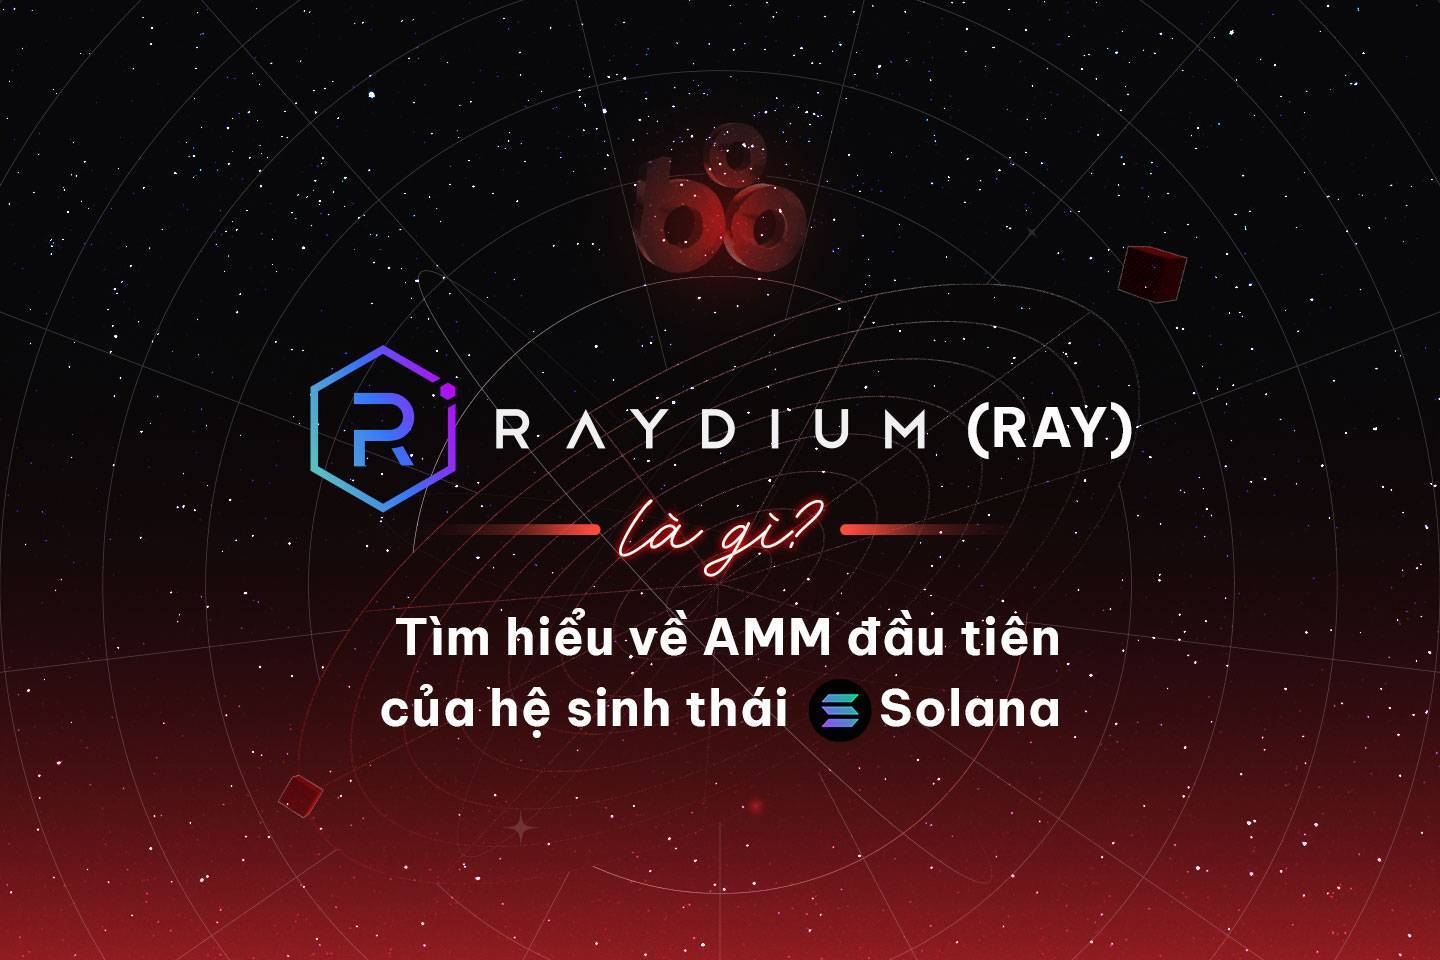 Raydium ray Là Gì Tìm Hiểu Về Amm Đầu Tiên Của Hệ Sinh Thái Solana